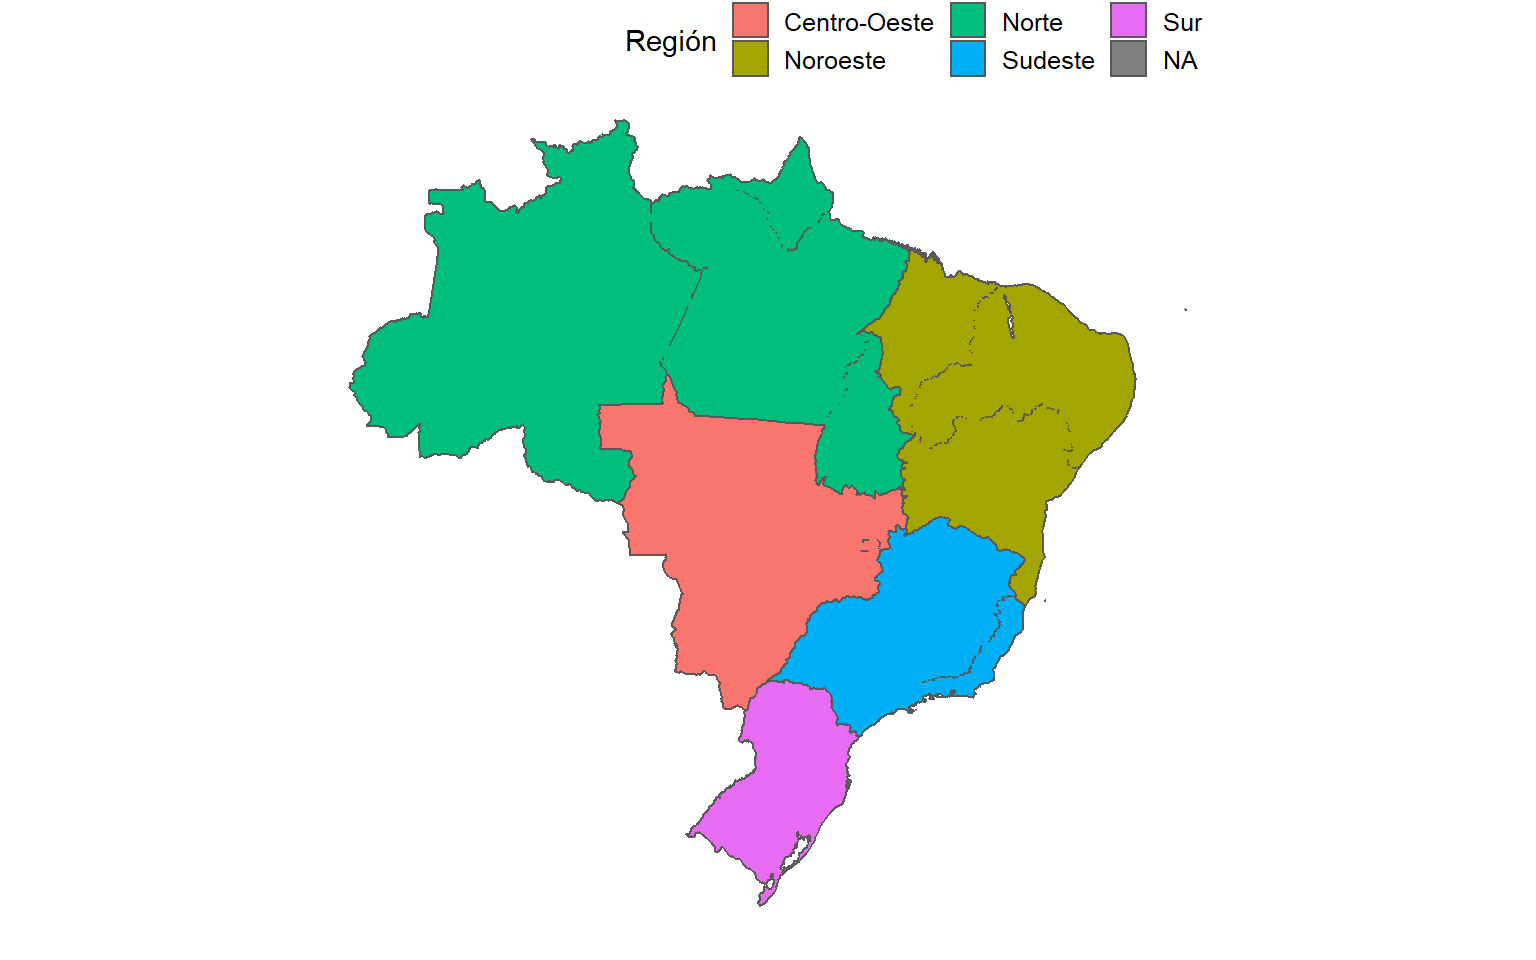  Mapa de las regiones del Brasil